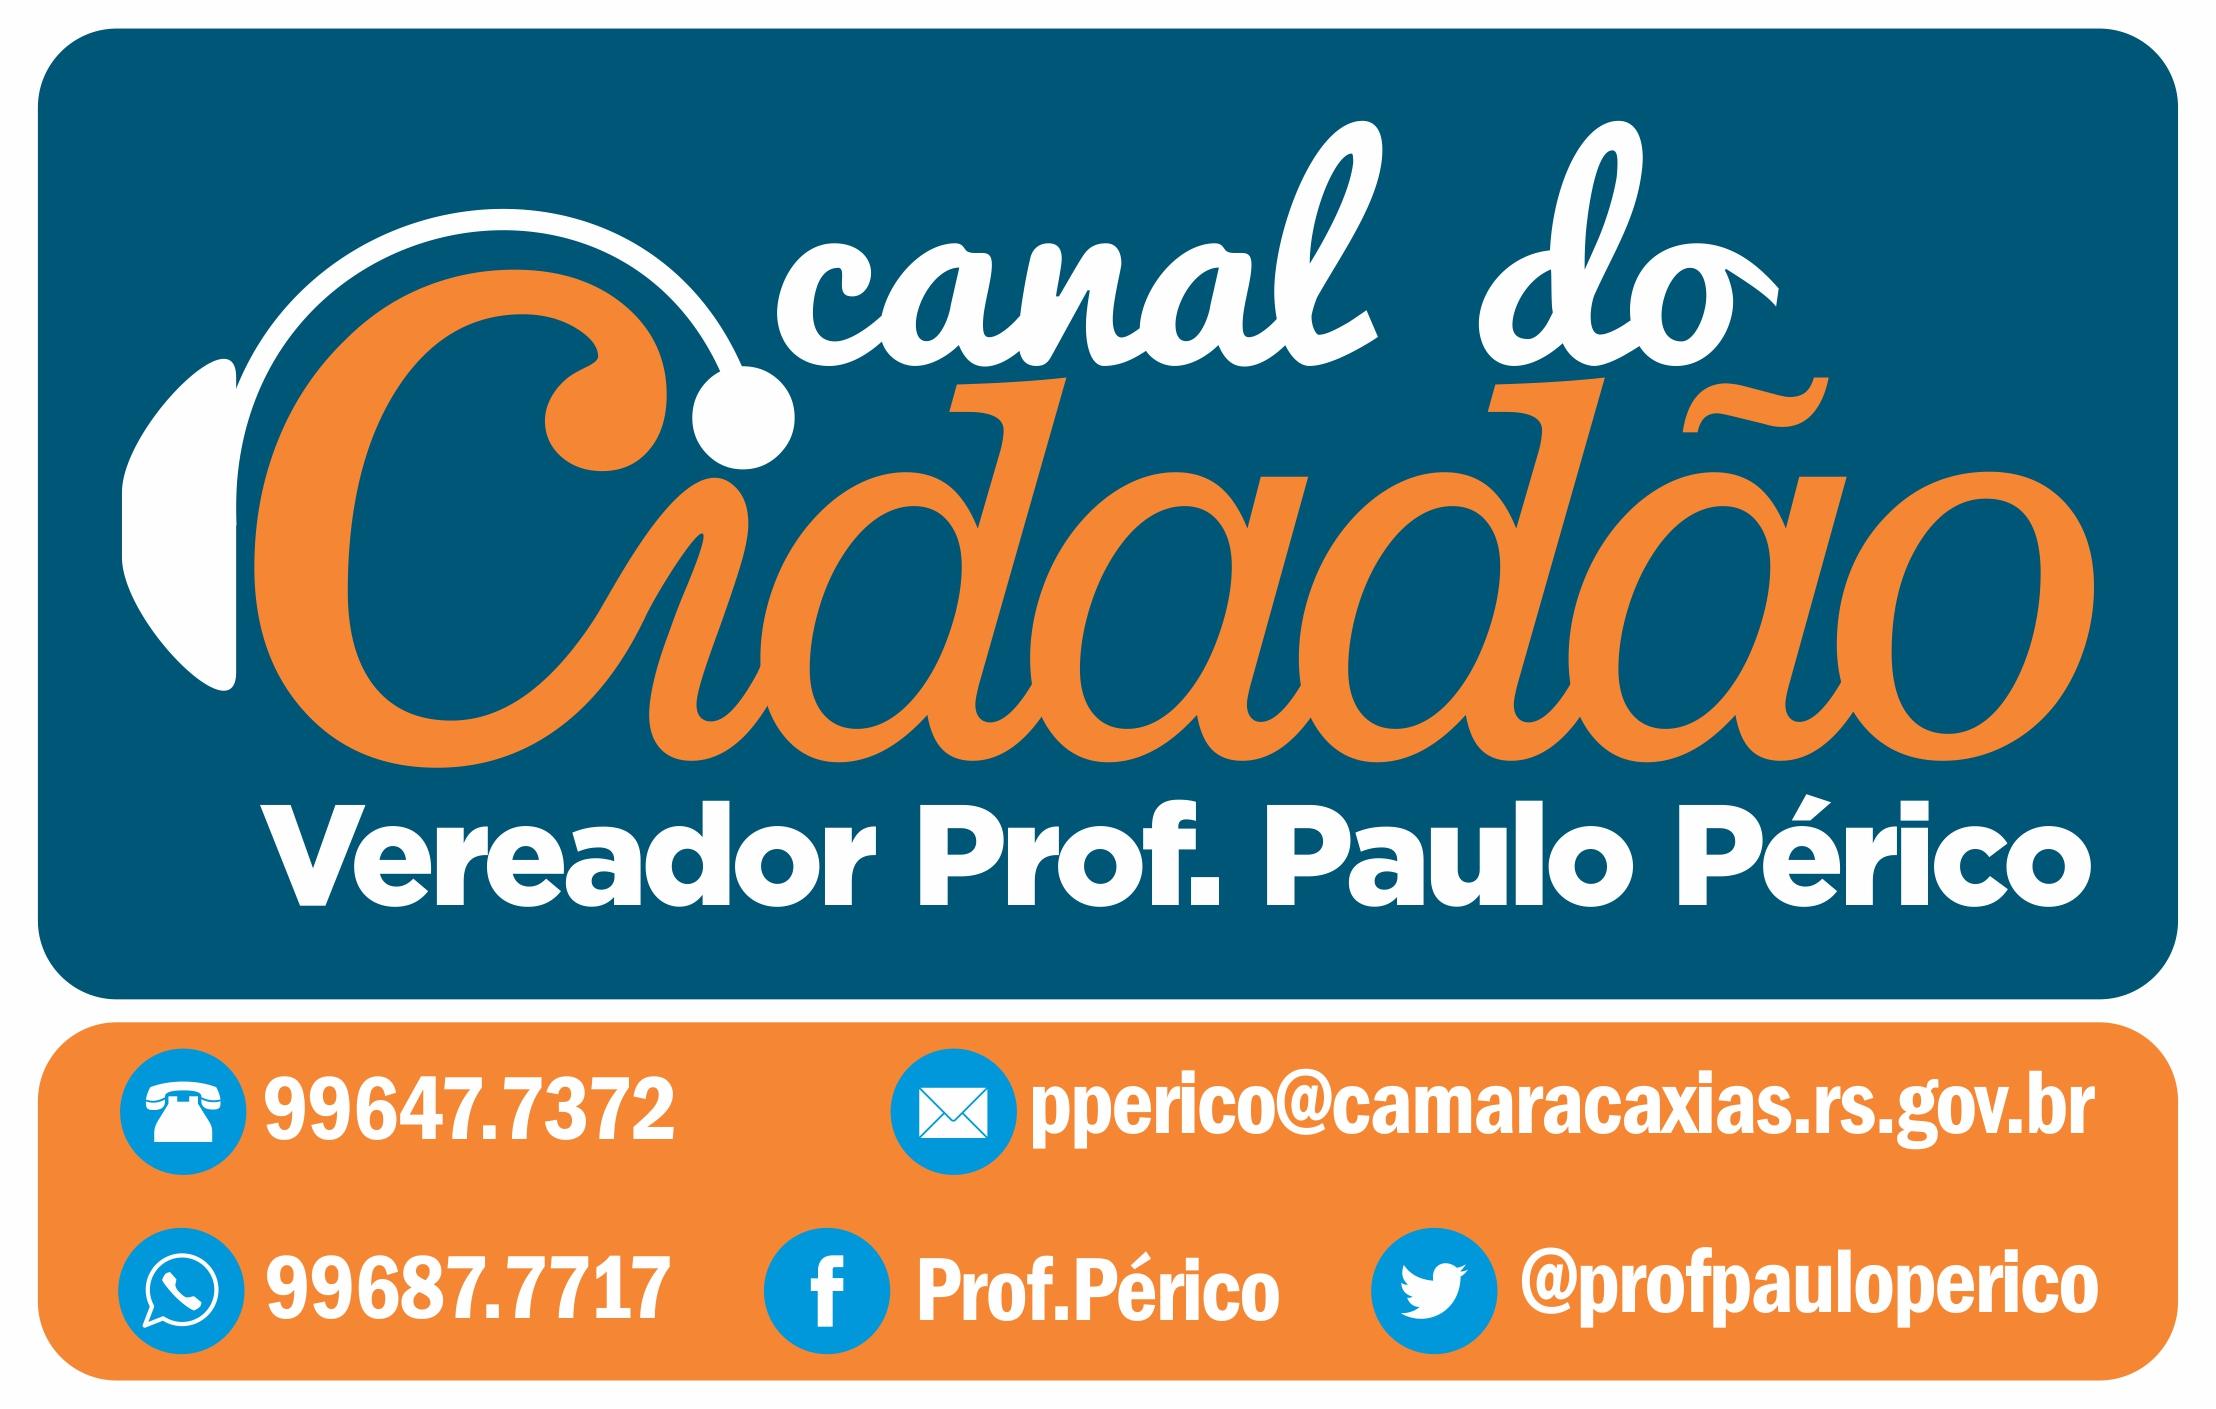 Vereador Prof. Périco lança Canal do Cidadão 